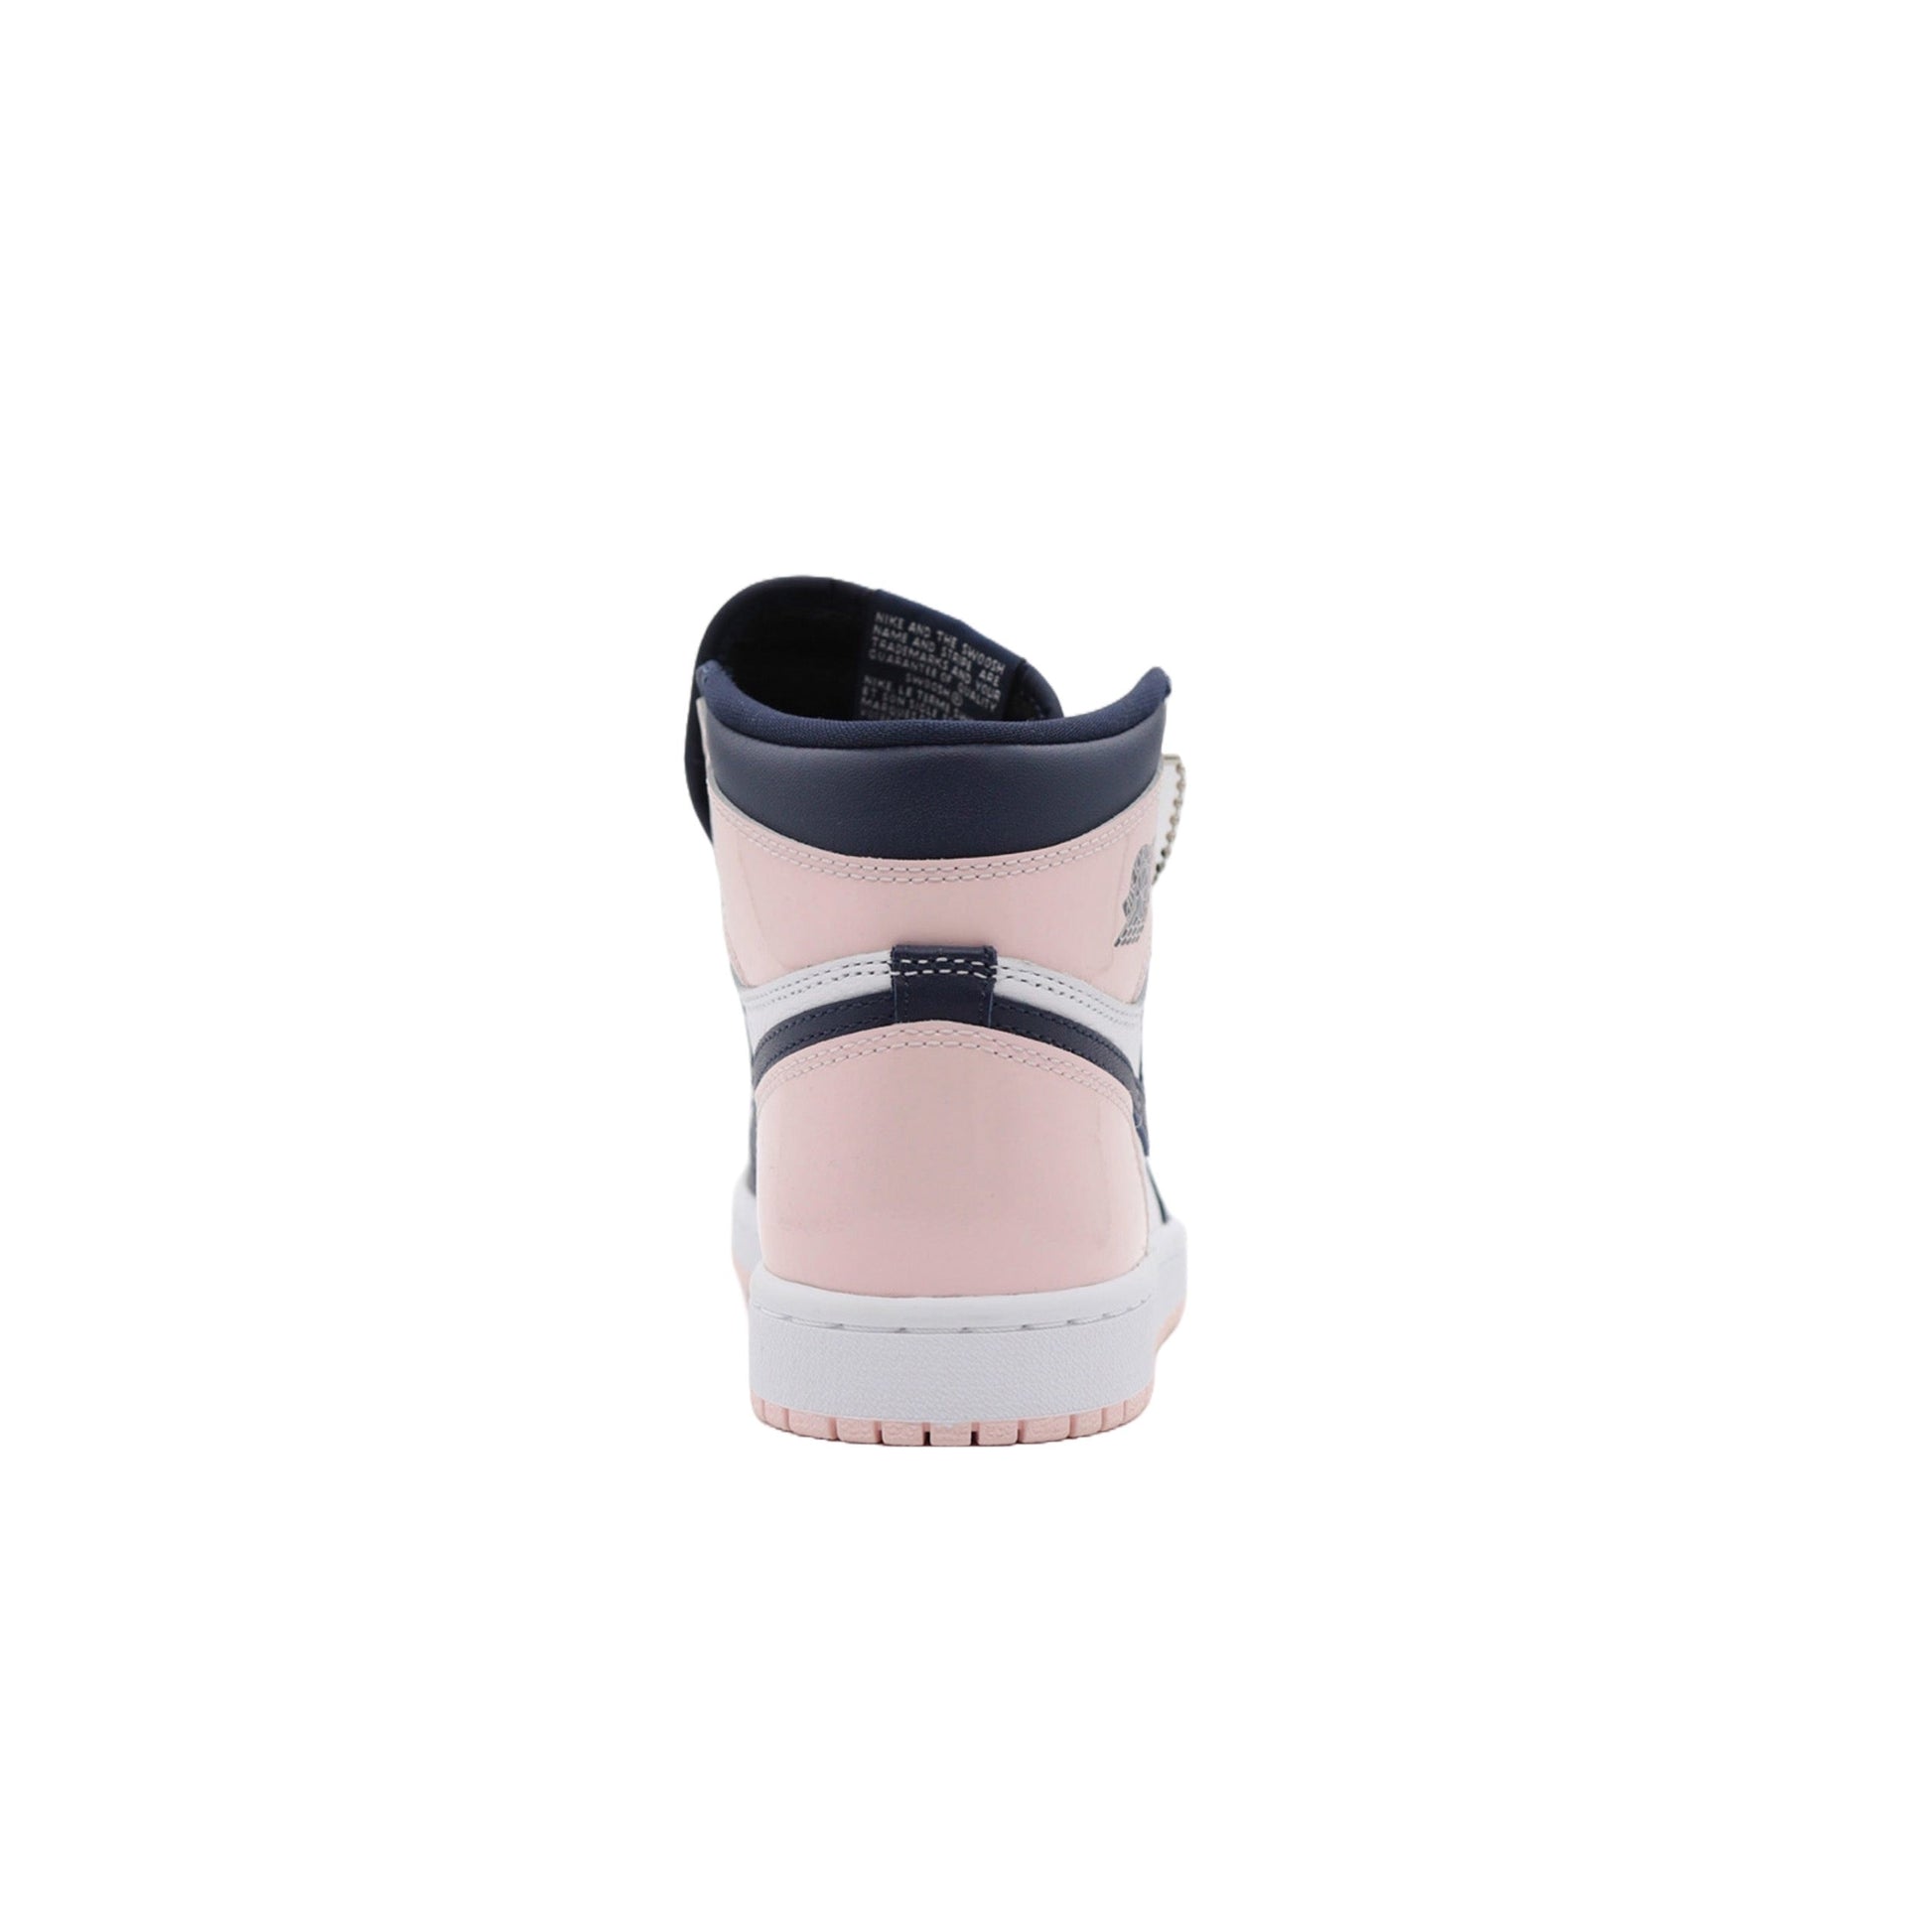 Air Jordan Brand will be releasing several college makeups of the Air Jordan (PS), SE Bubble Gum